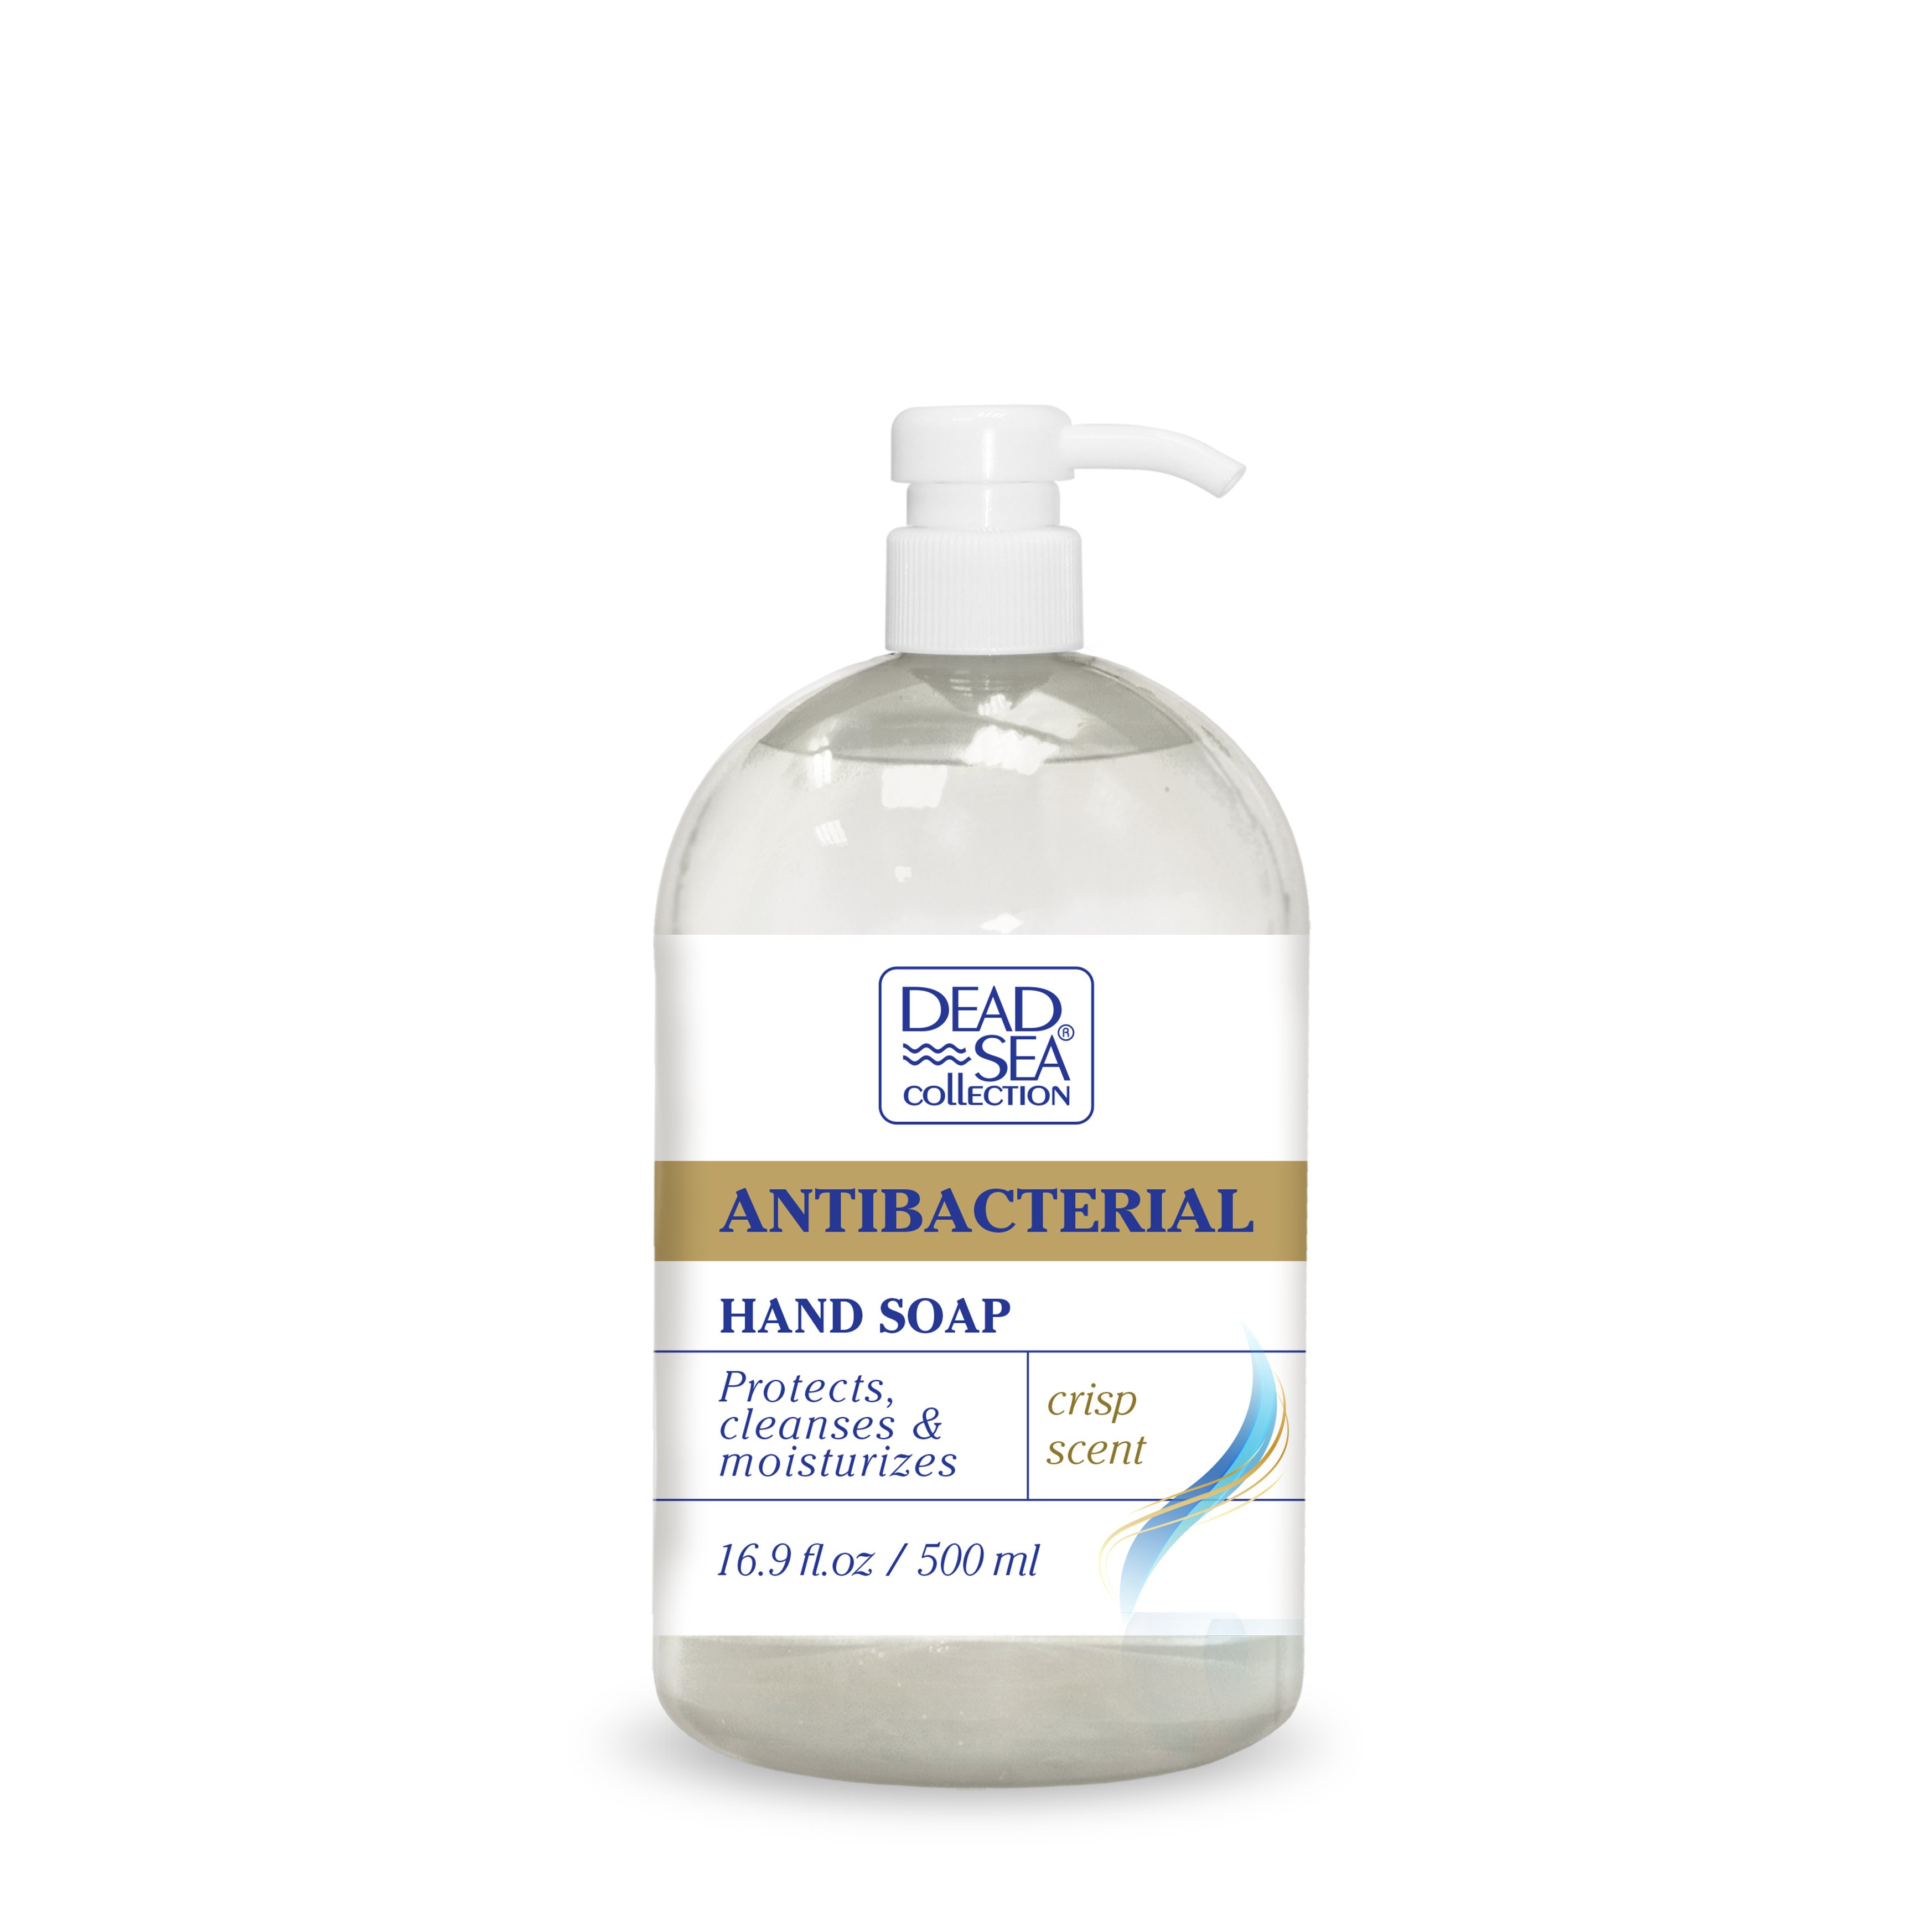 Антибактериальное жидкое мыло Dead Sea Collection с ароматом свежести, 500 мл - фото 1